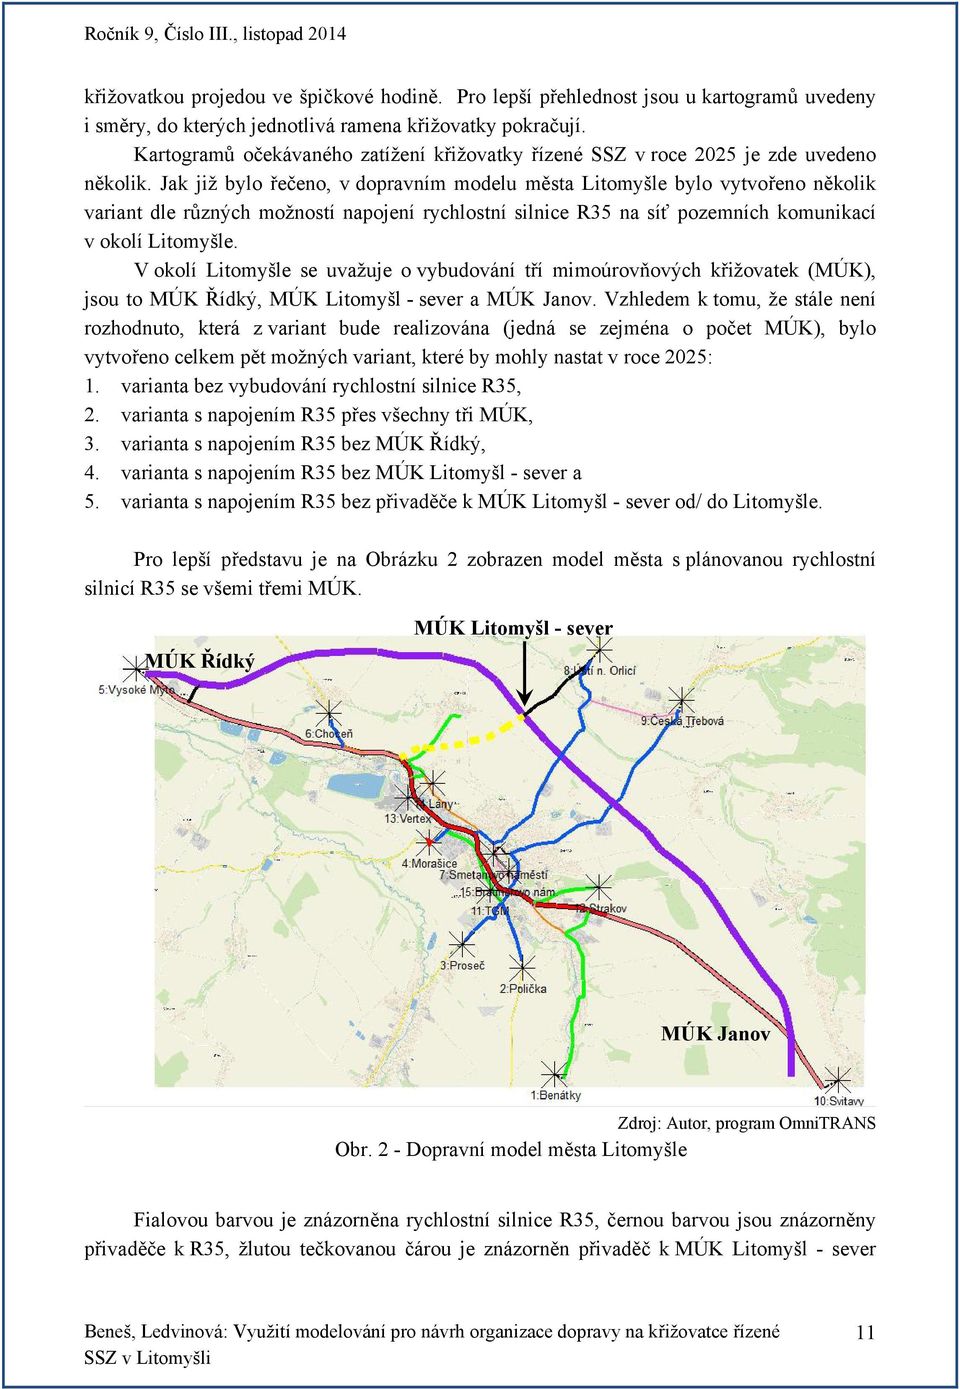 Jak již bylo řečeno, v dopravním modelu města Litomyšle bylo vytvořeno několik variant dle různých možností napojení rychlostní silnice R35 na síť pozemních komunikací v okolí Litomyšle.